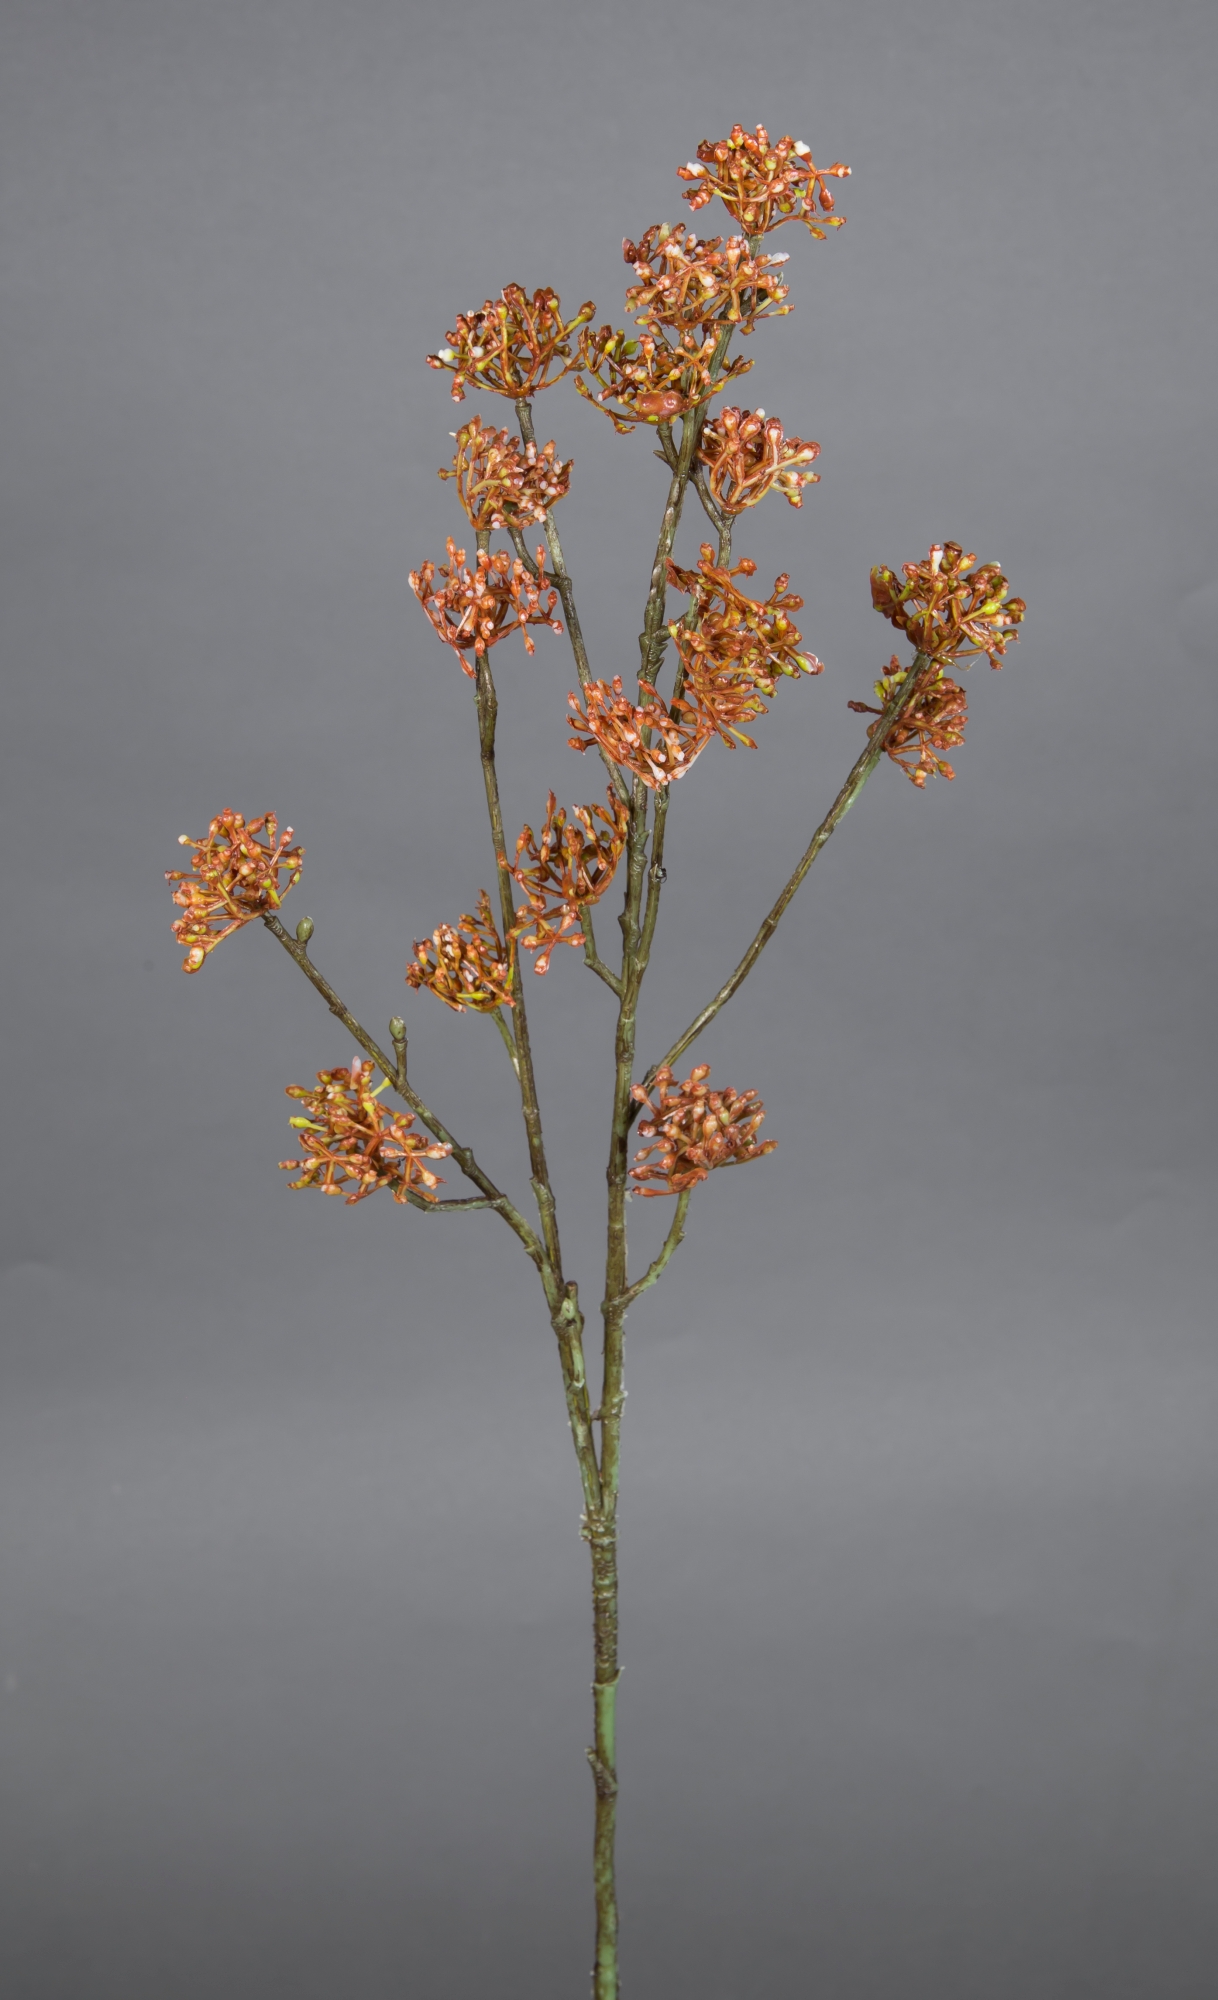 Zweig CG künstlicher Kunstpflanzen Reiszweig braun-orange 67cm Kunstzweig